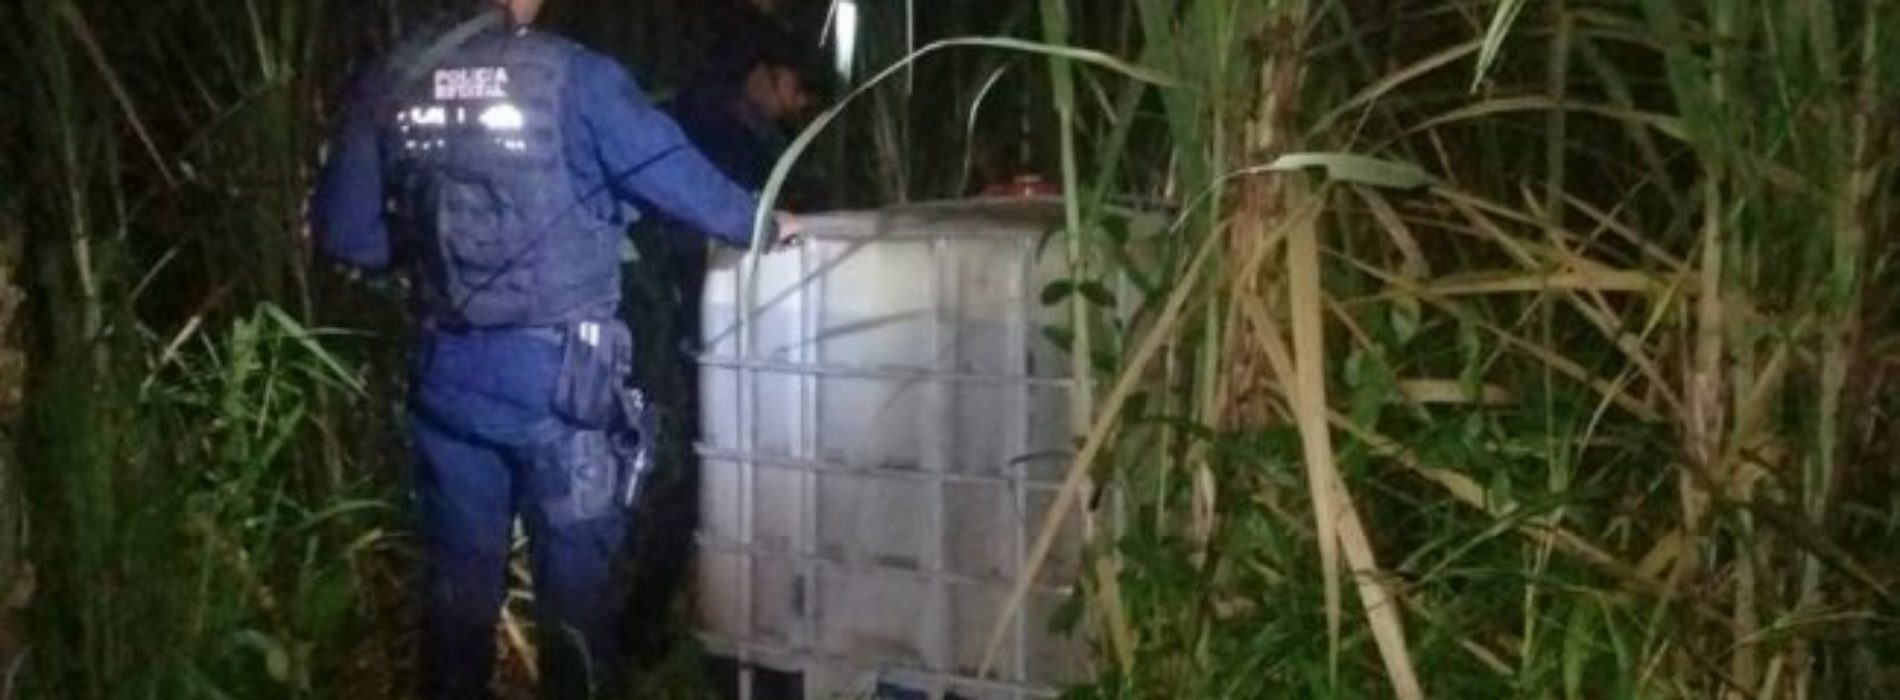 Localizan dos contenedores con hidrocarburo robado en el
Papaloapan